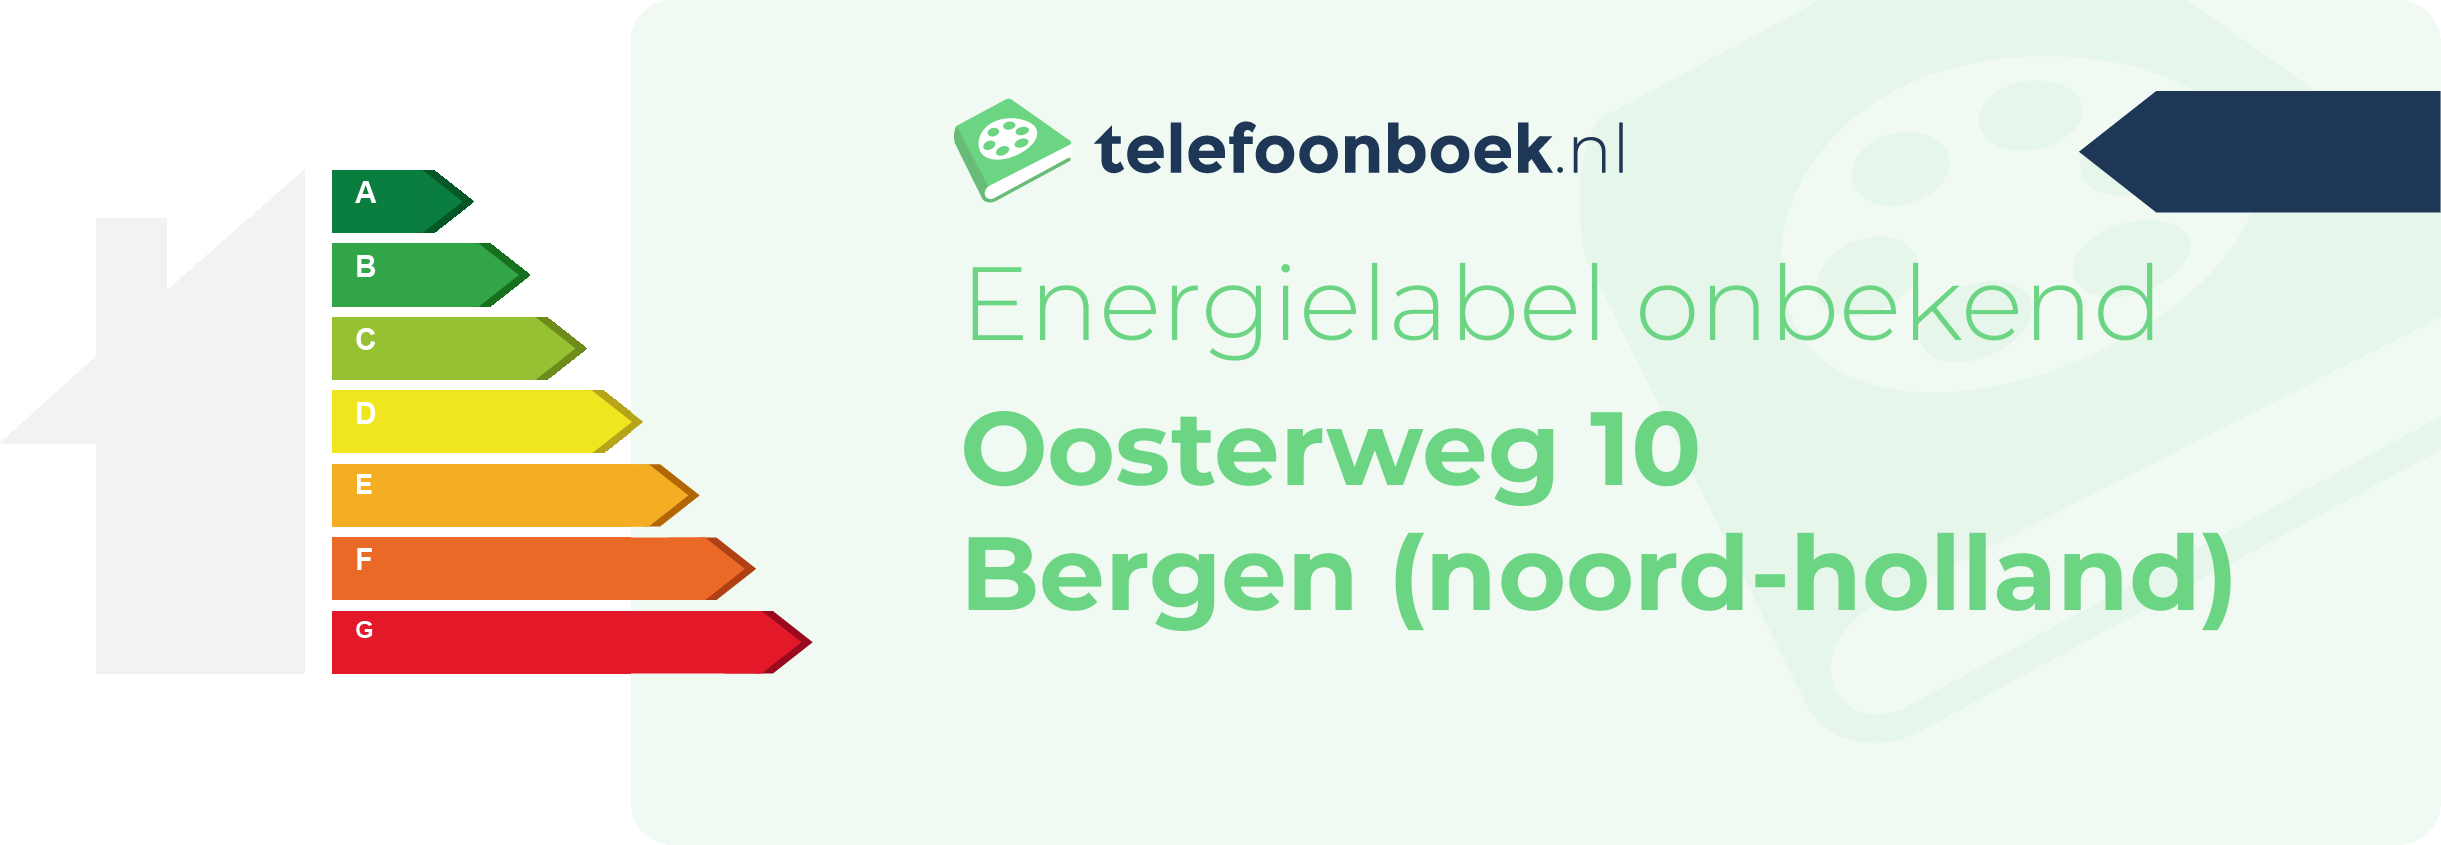 Energielabel Oosterweg 10 Bergen (Noord-Holland)